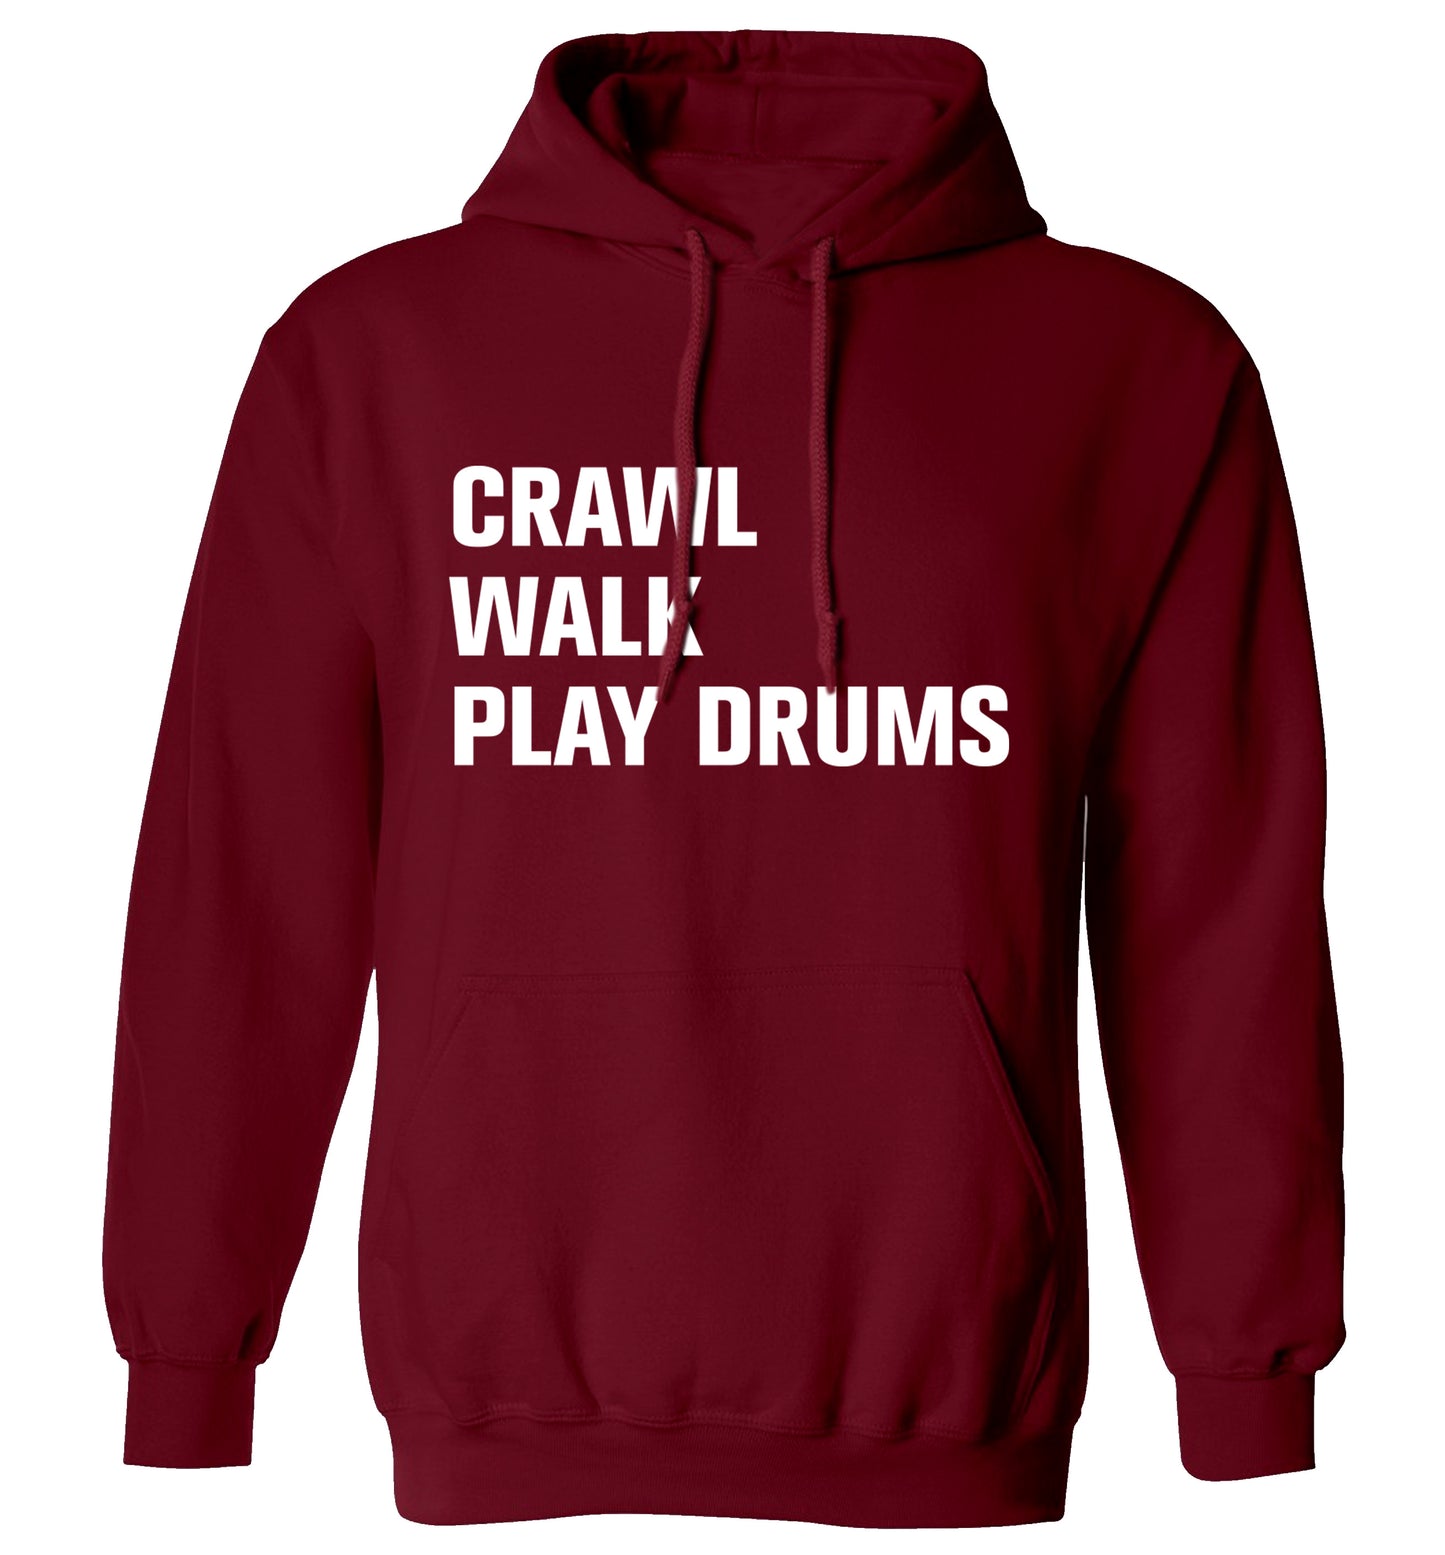 Crawl walk play drums adults unisex maroon hoodie 2XL